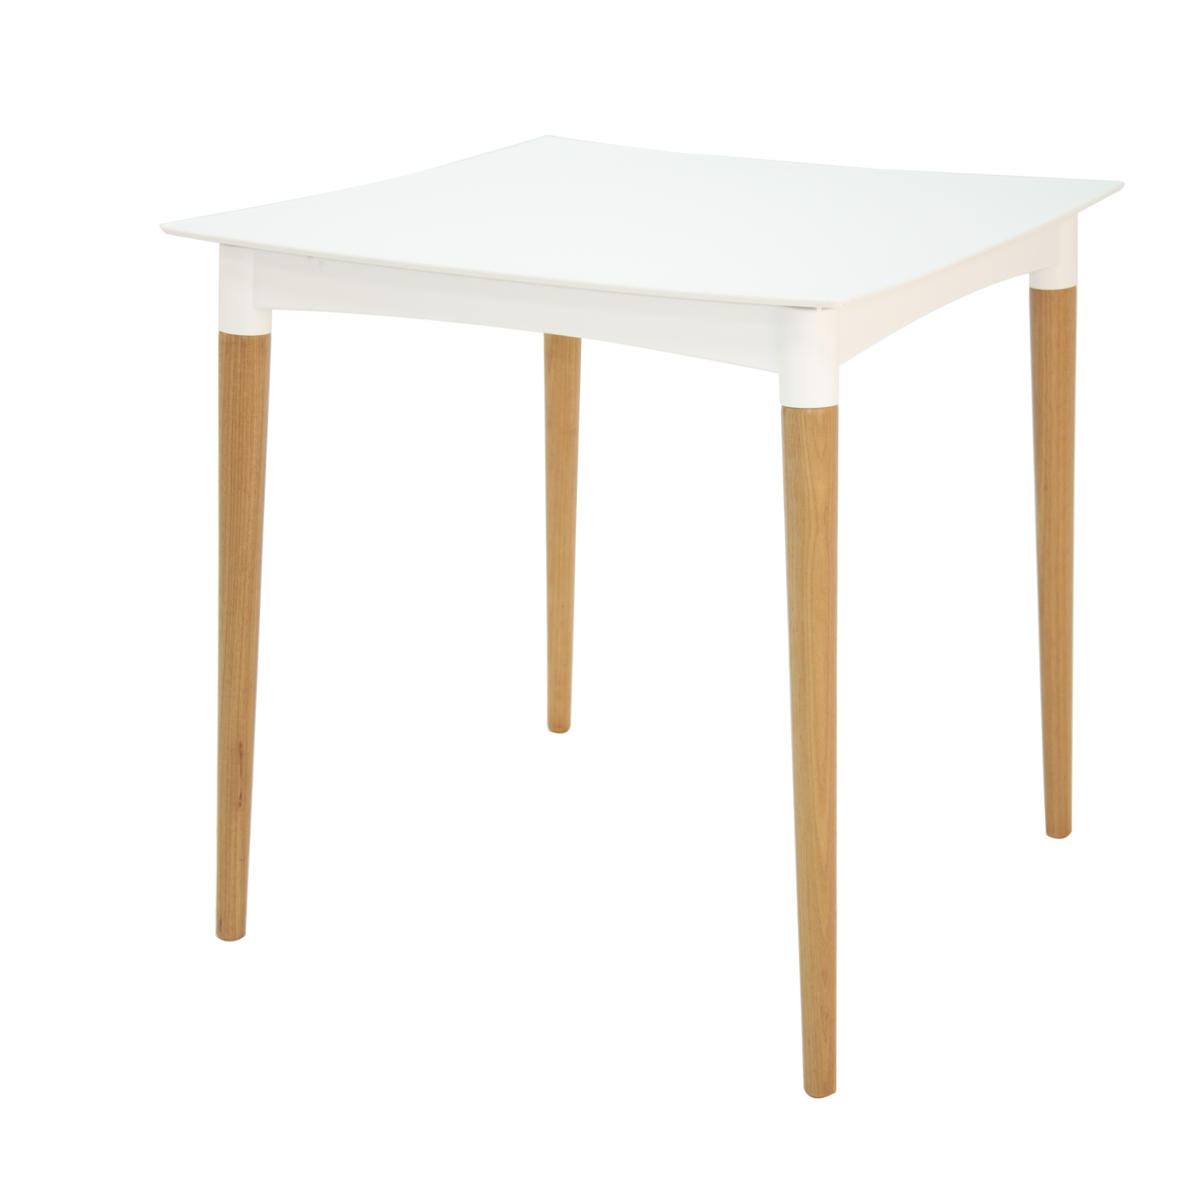 Кухонные столы 90 см. Белый стол с деревянными ножками. Стол кухонный белый с деревянными ножками. Белый столик с деревянными ножками. Стол 110х70.